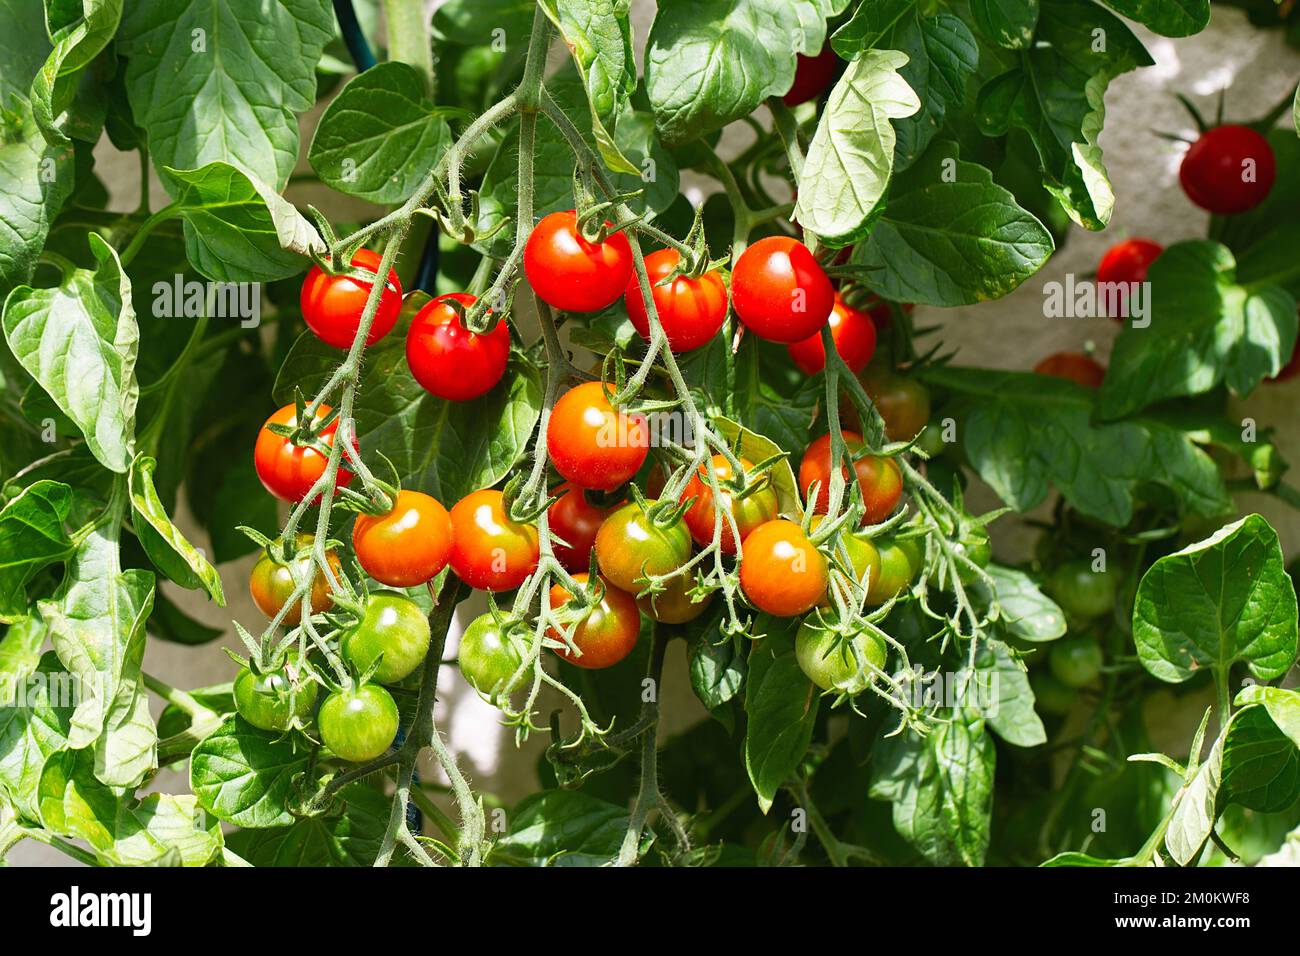 Rote reife Kirschtomaten aus einem Gewächshaus. Reife Tomaten liegen auf grünem Blatthintergrund und hängen im Garten an der Weinrebe eines Tomatenbaums. Stockfoto